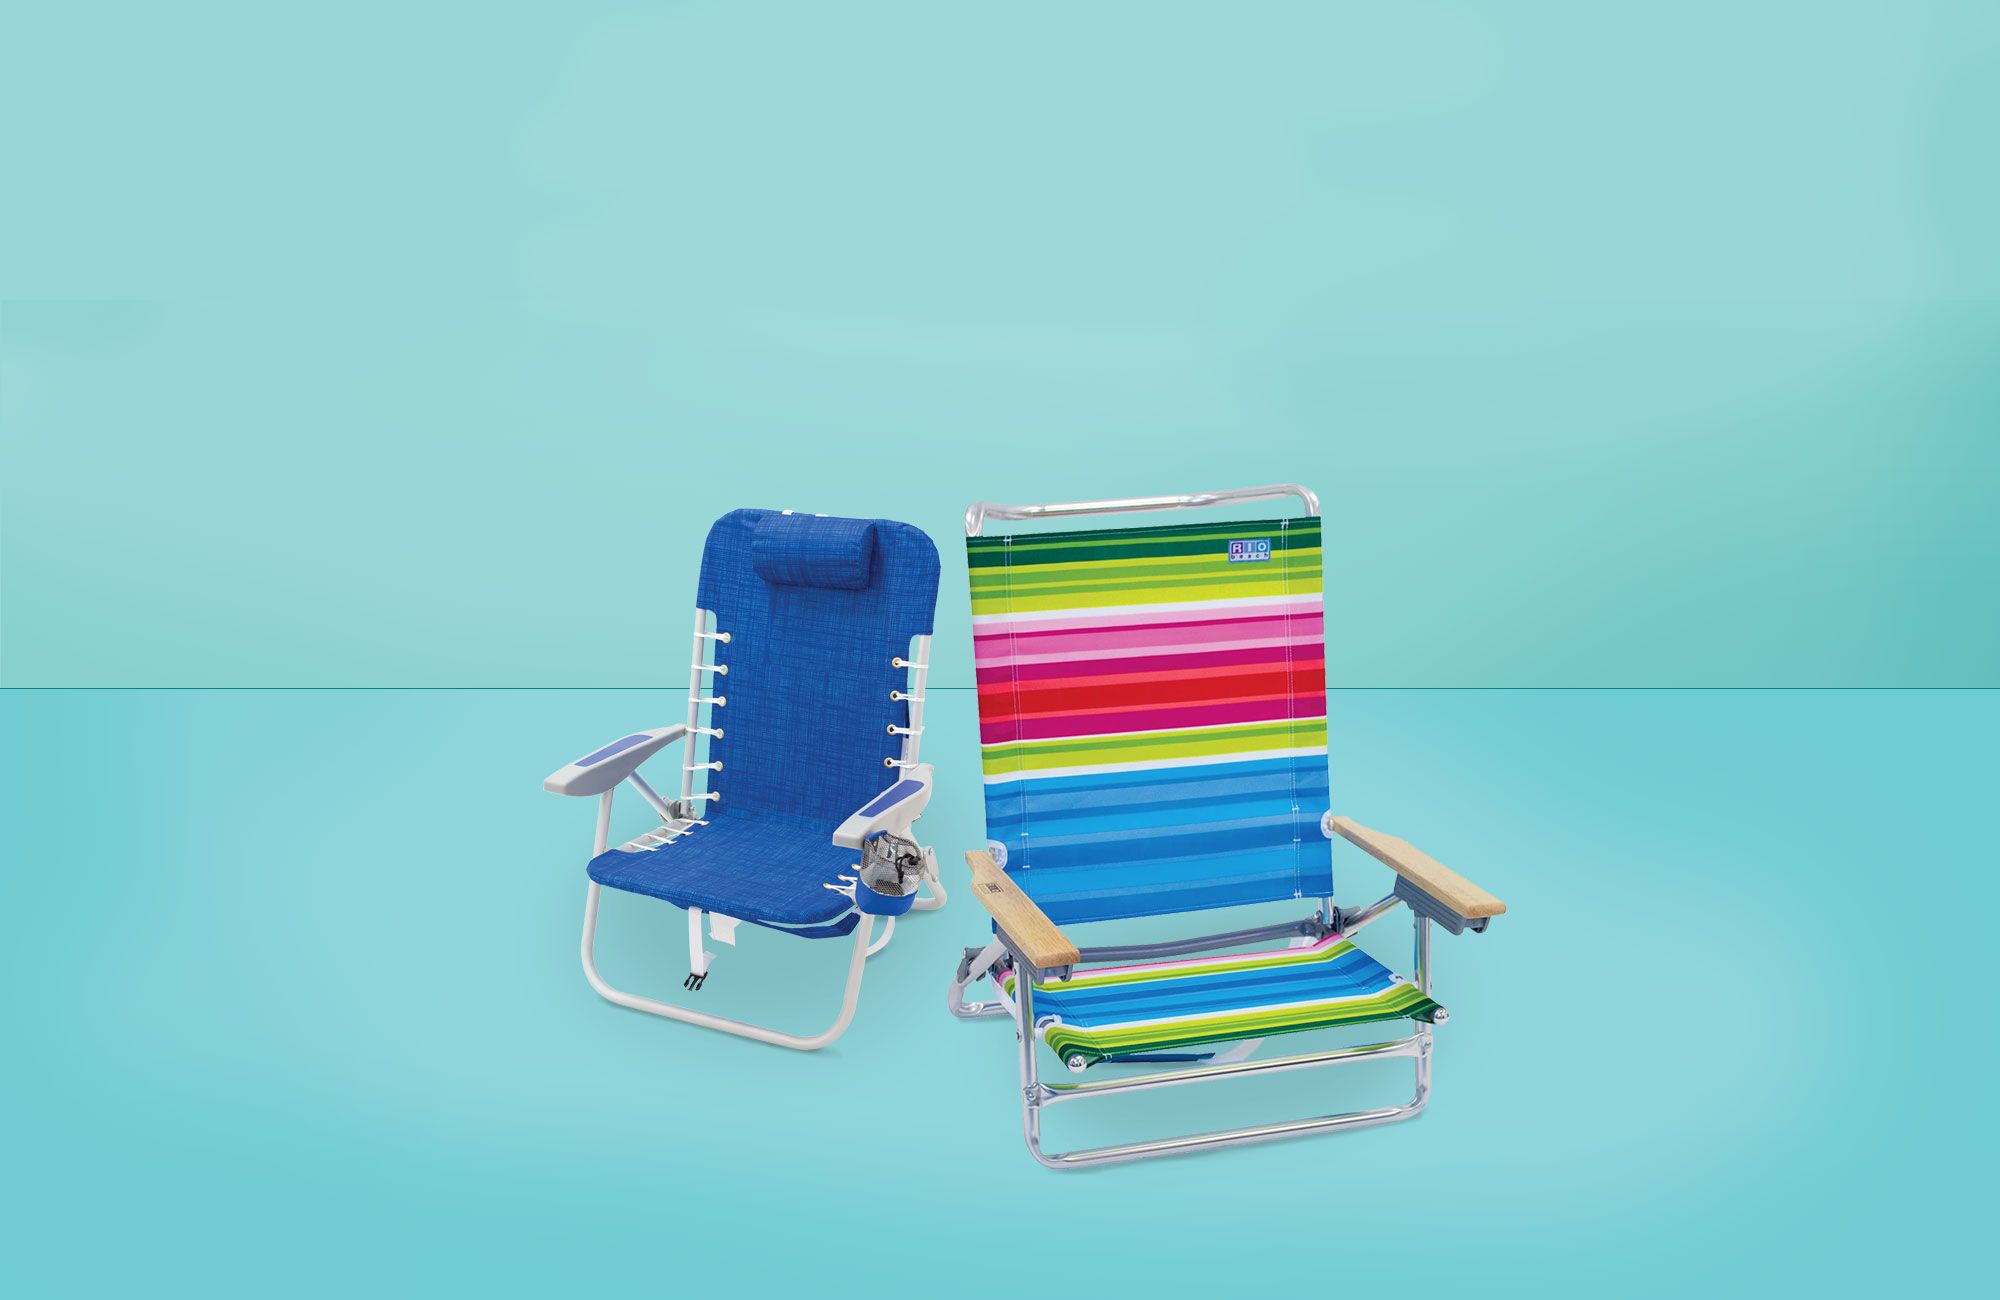 best beach chairs 2019